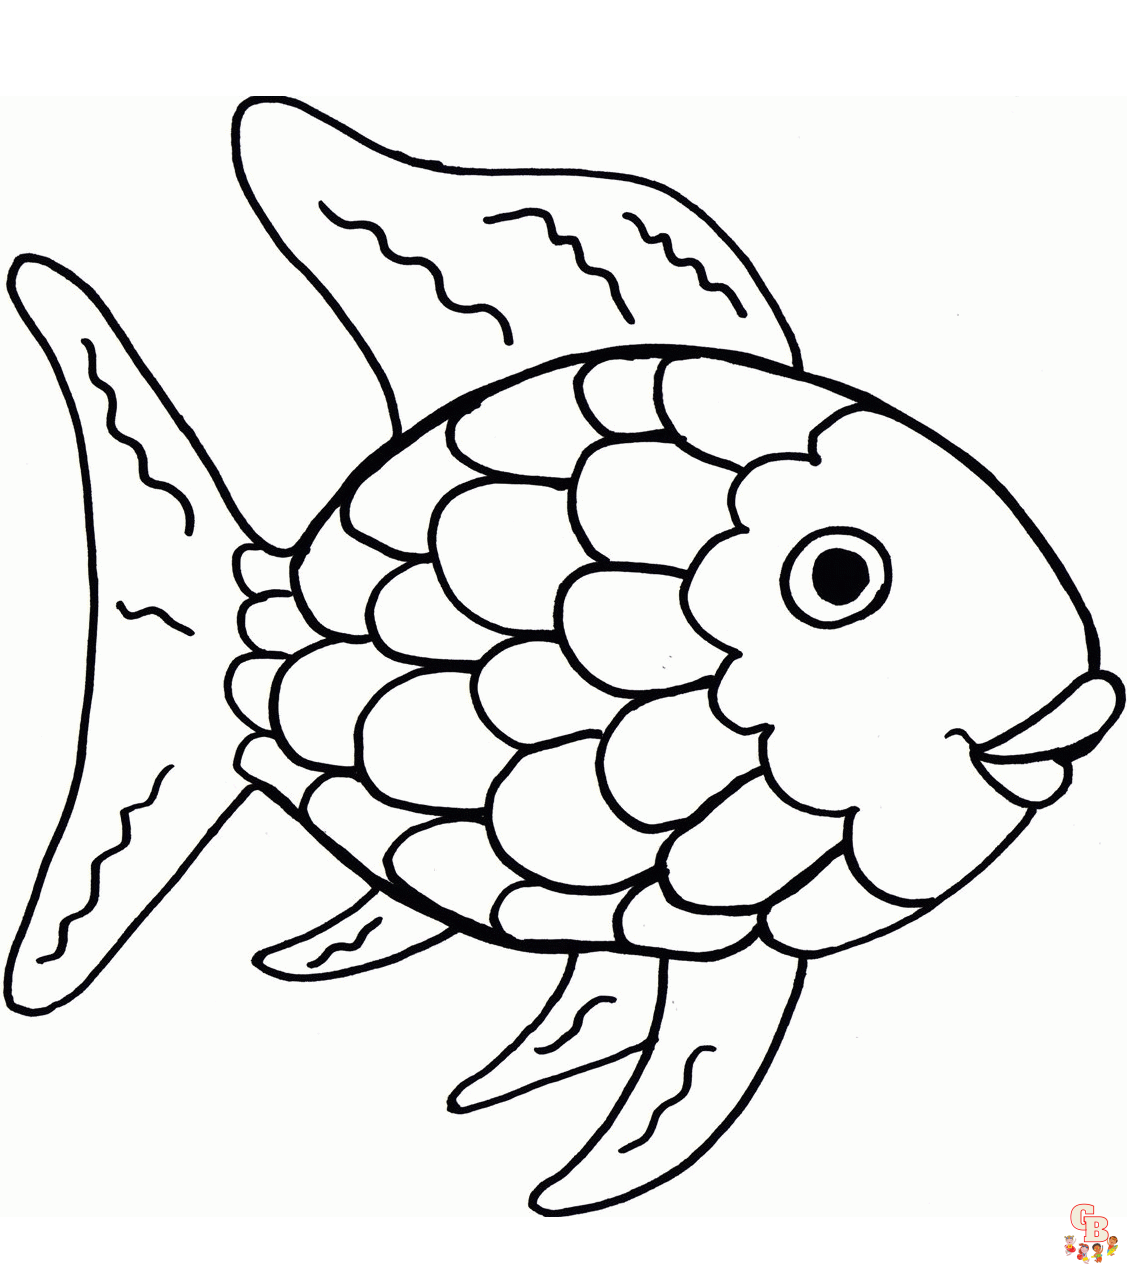 Malvorlagen Regenbogenfisch